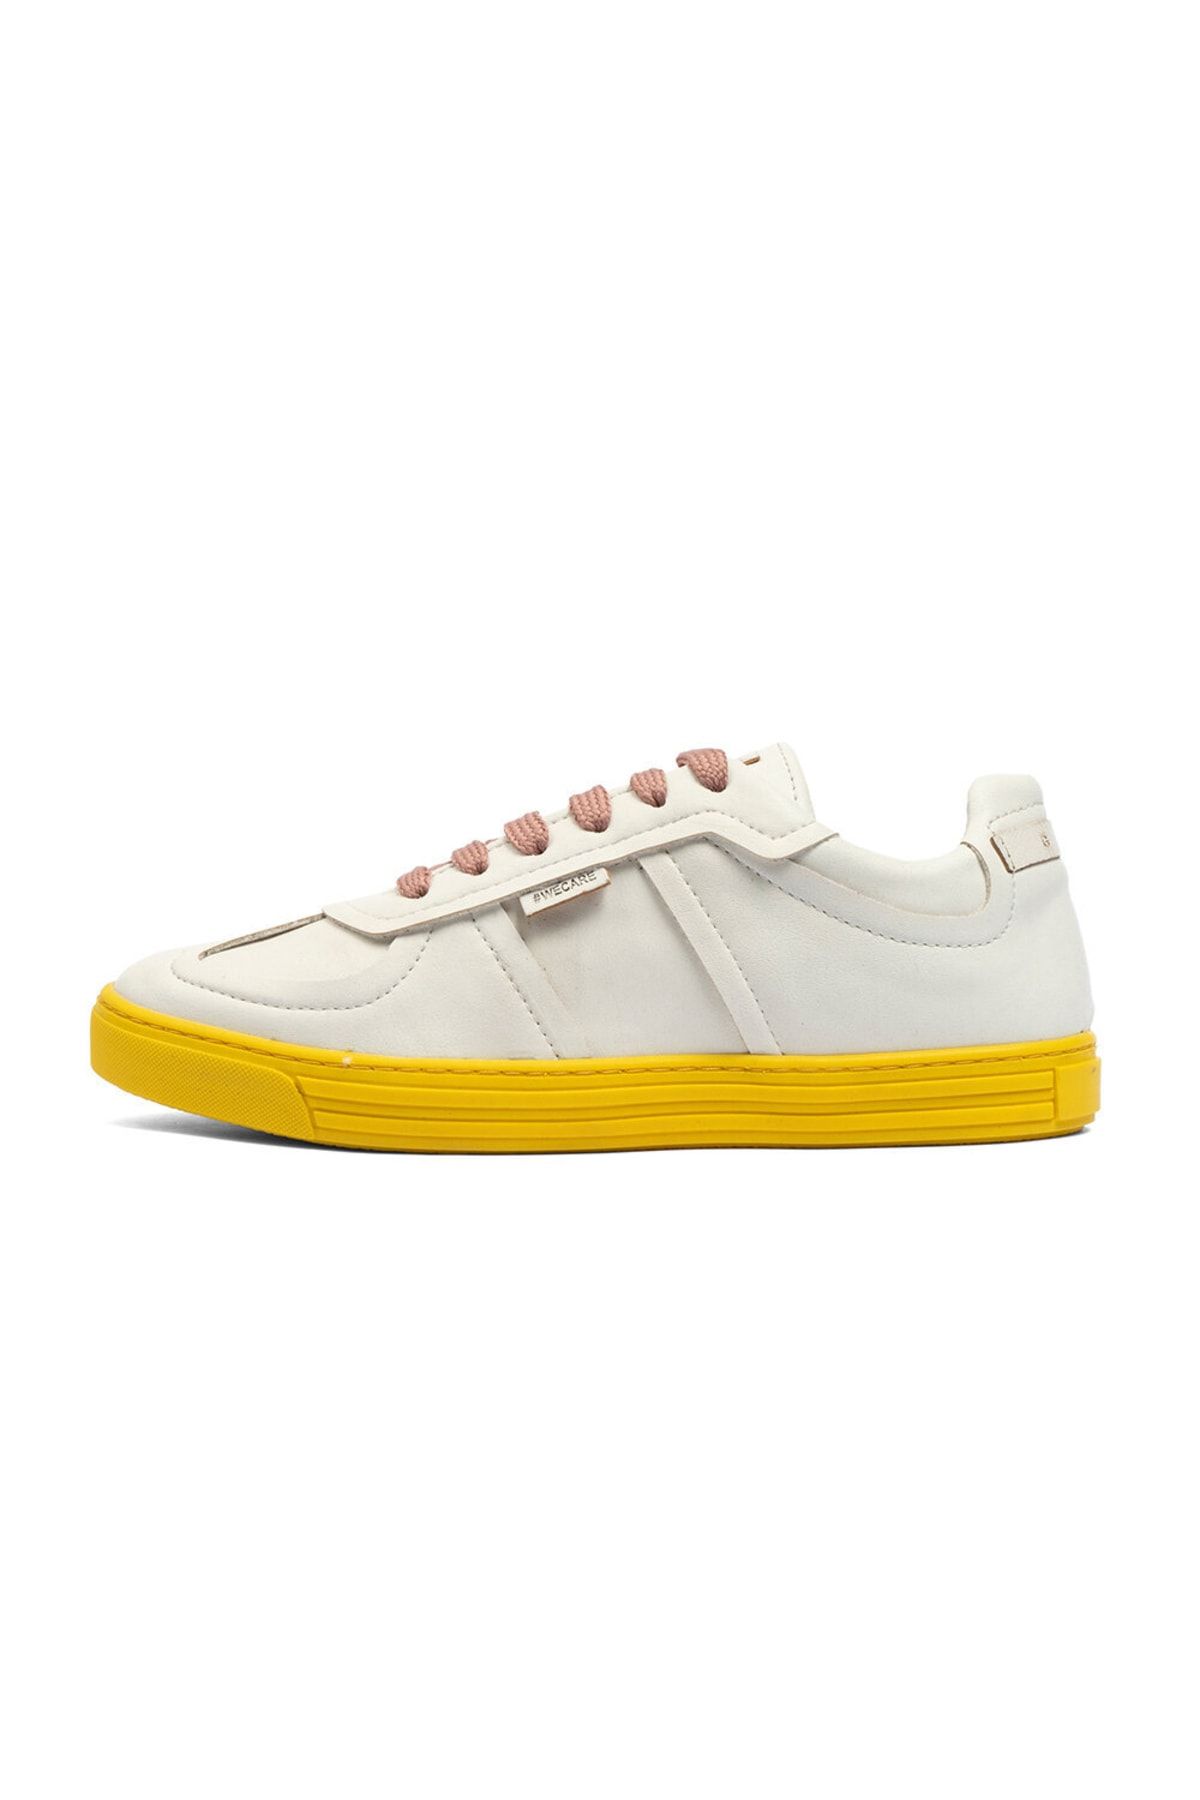 Greyder Lab Kadın Beyaz Hakiki Deri Sneaker Ayakkabı Gl22172